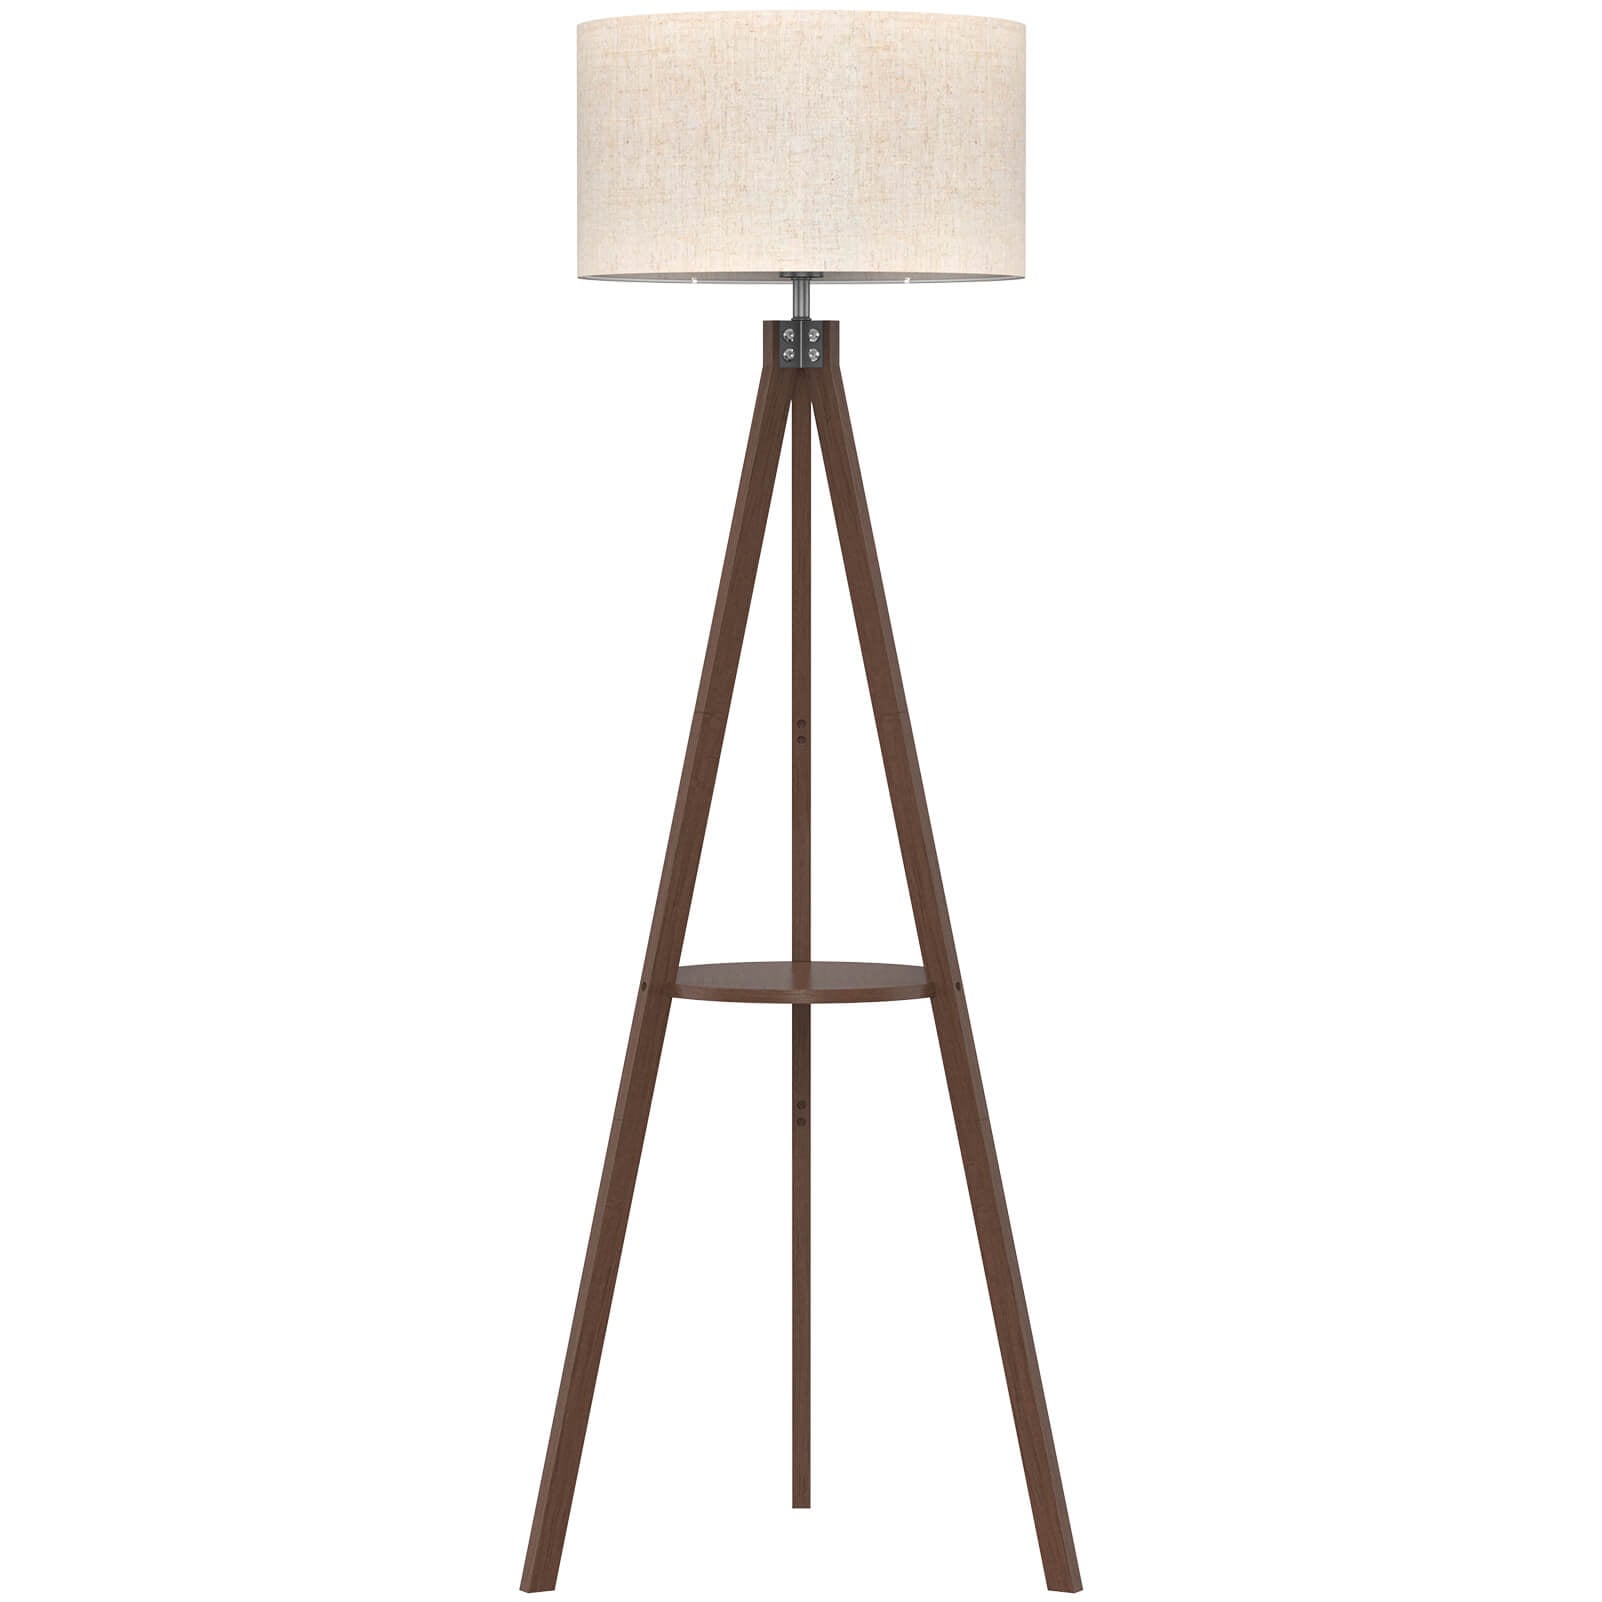 Wooden Floor Lamp with Shelf